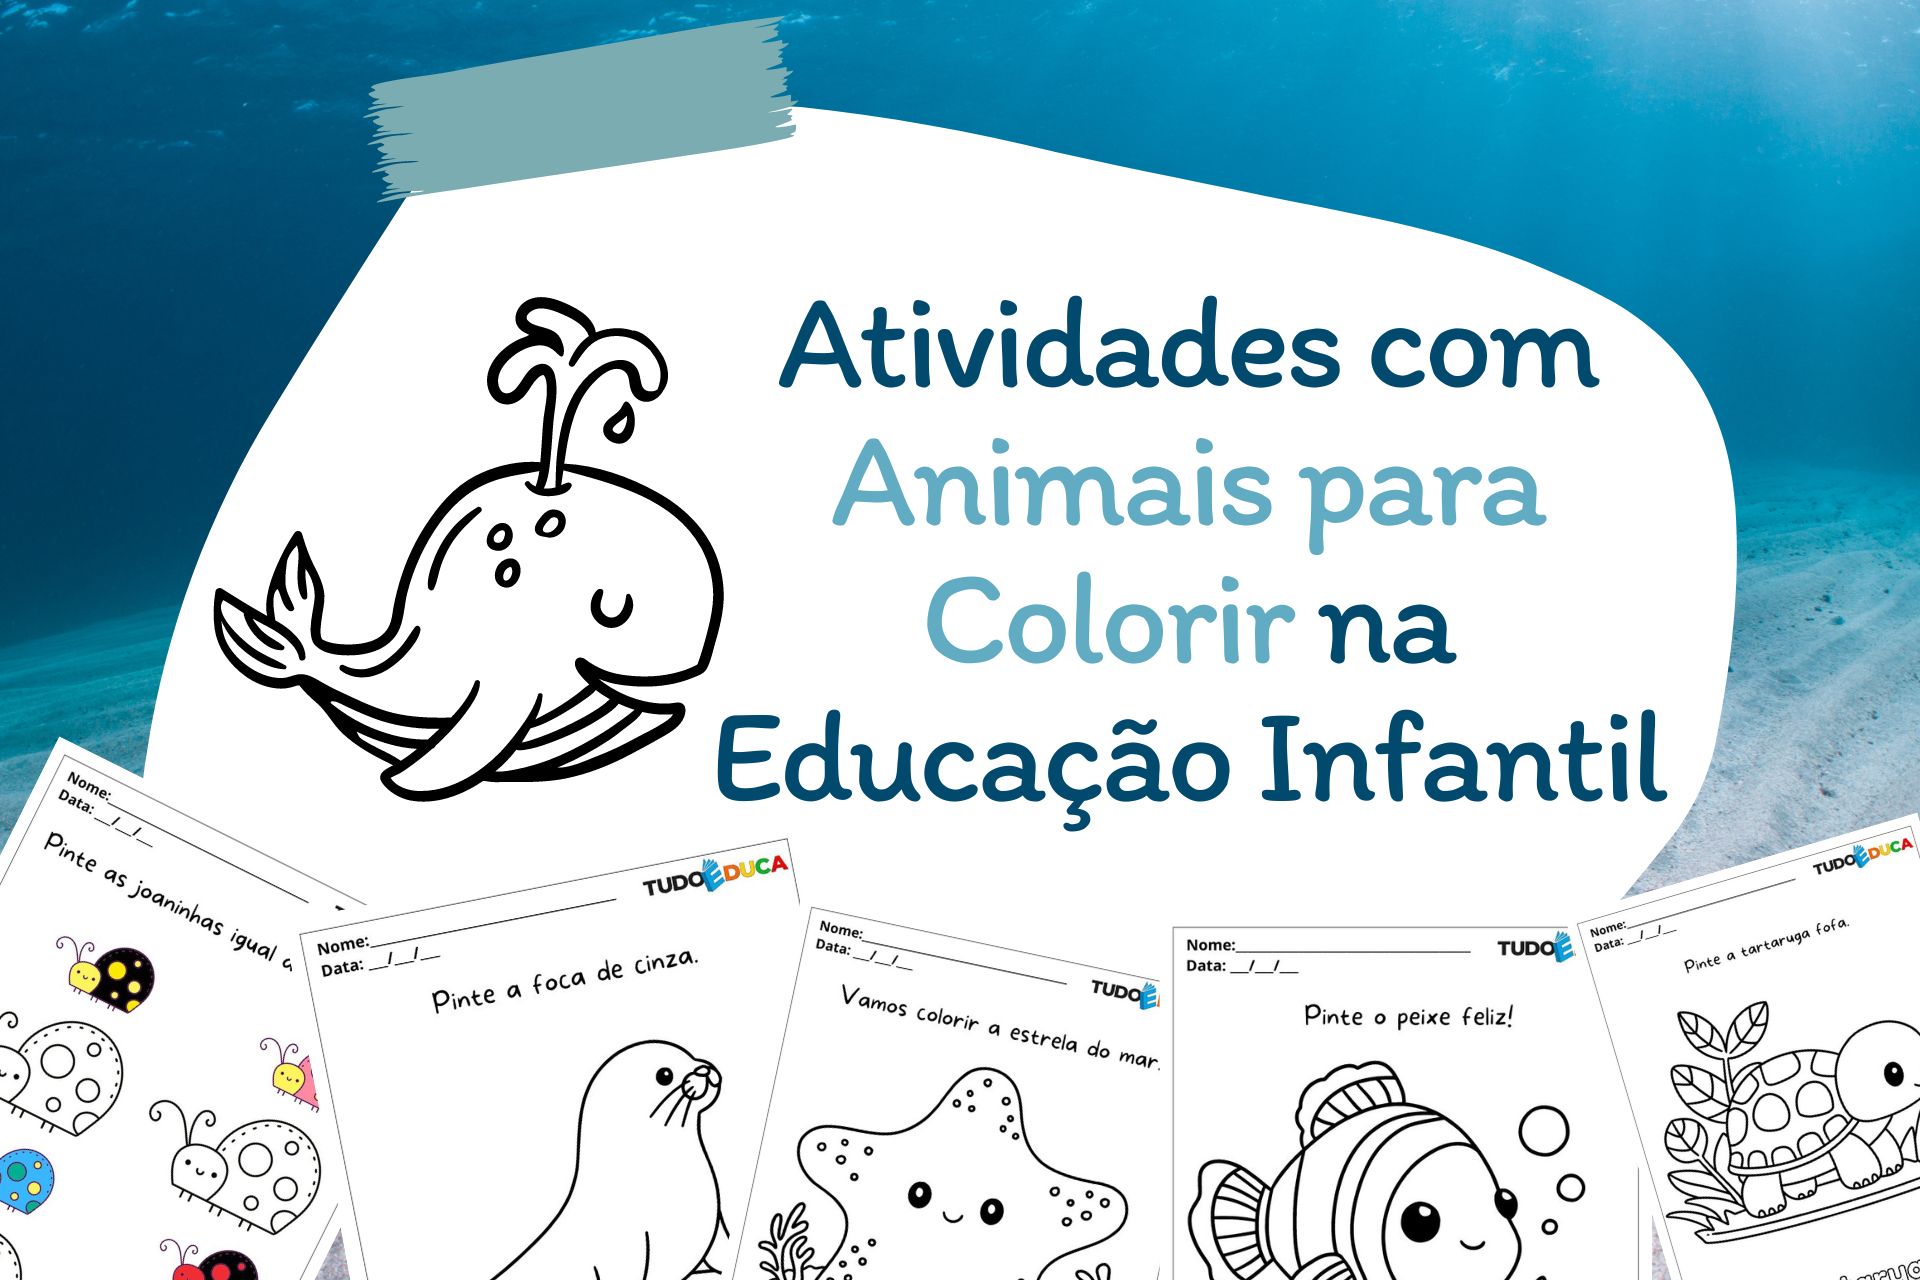 Atividades com Animais para Colorir na Educação Infantil